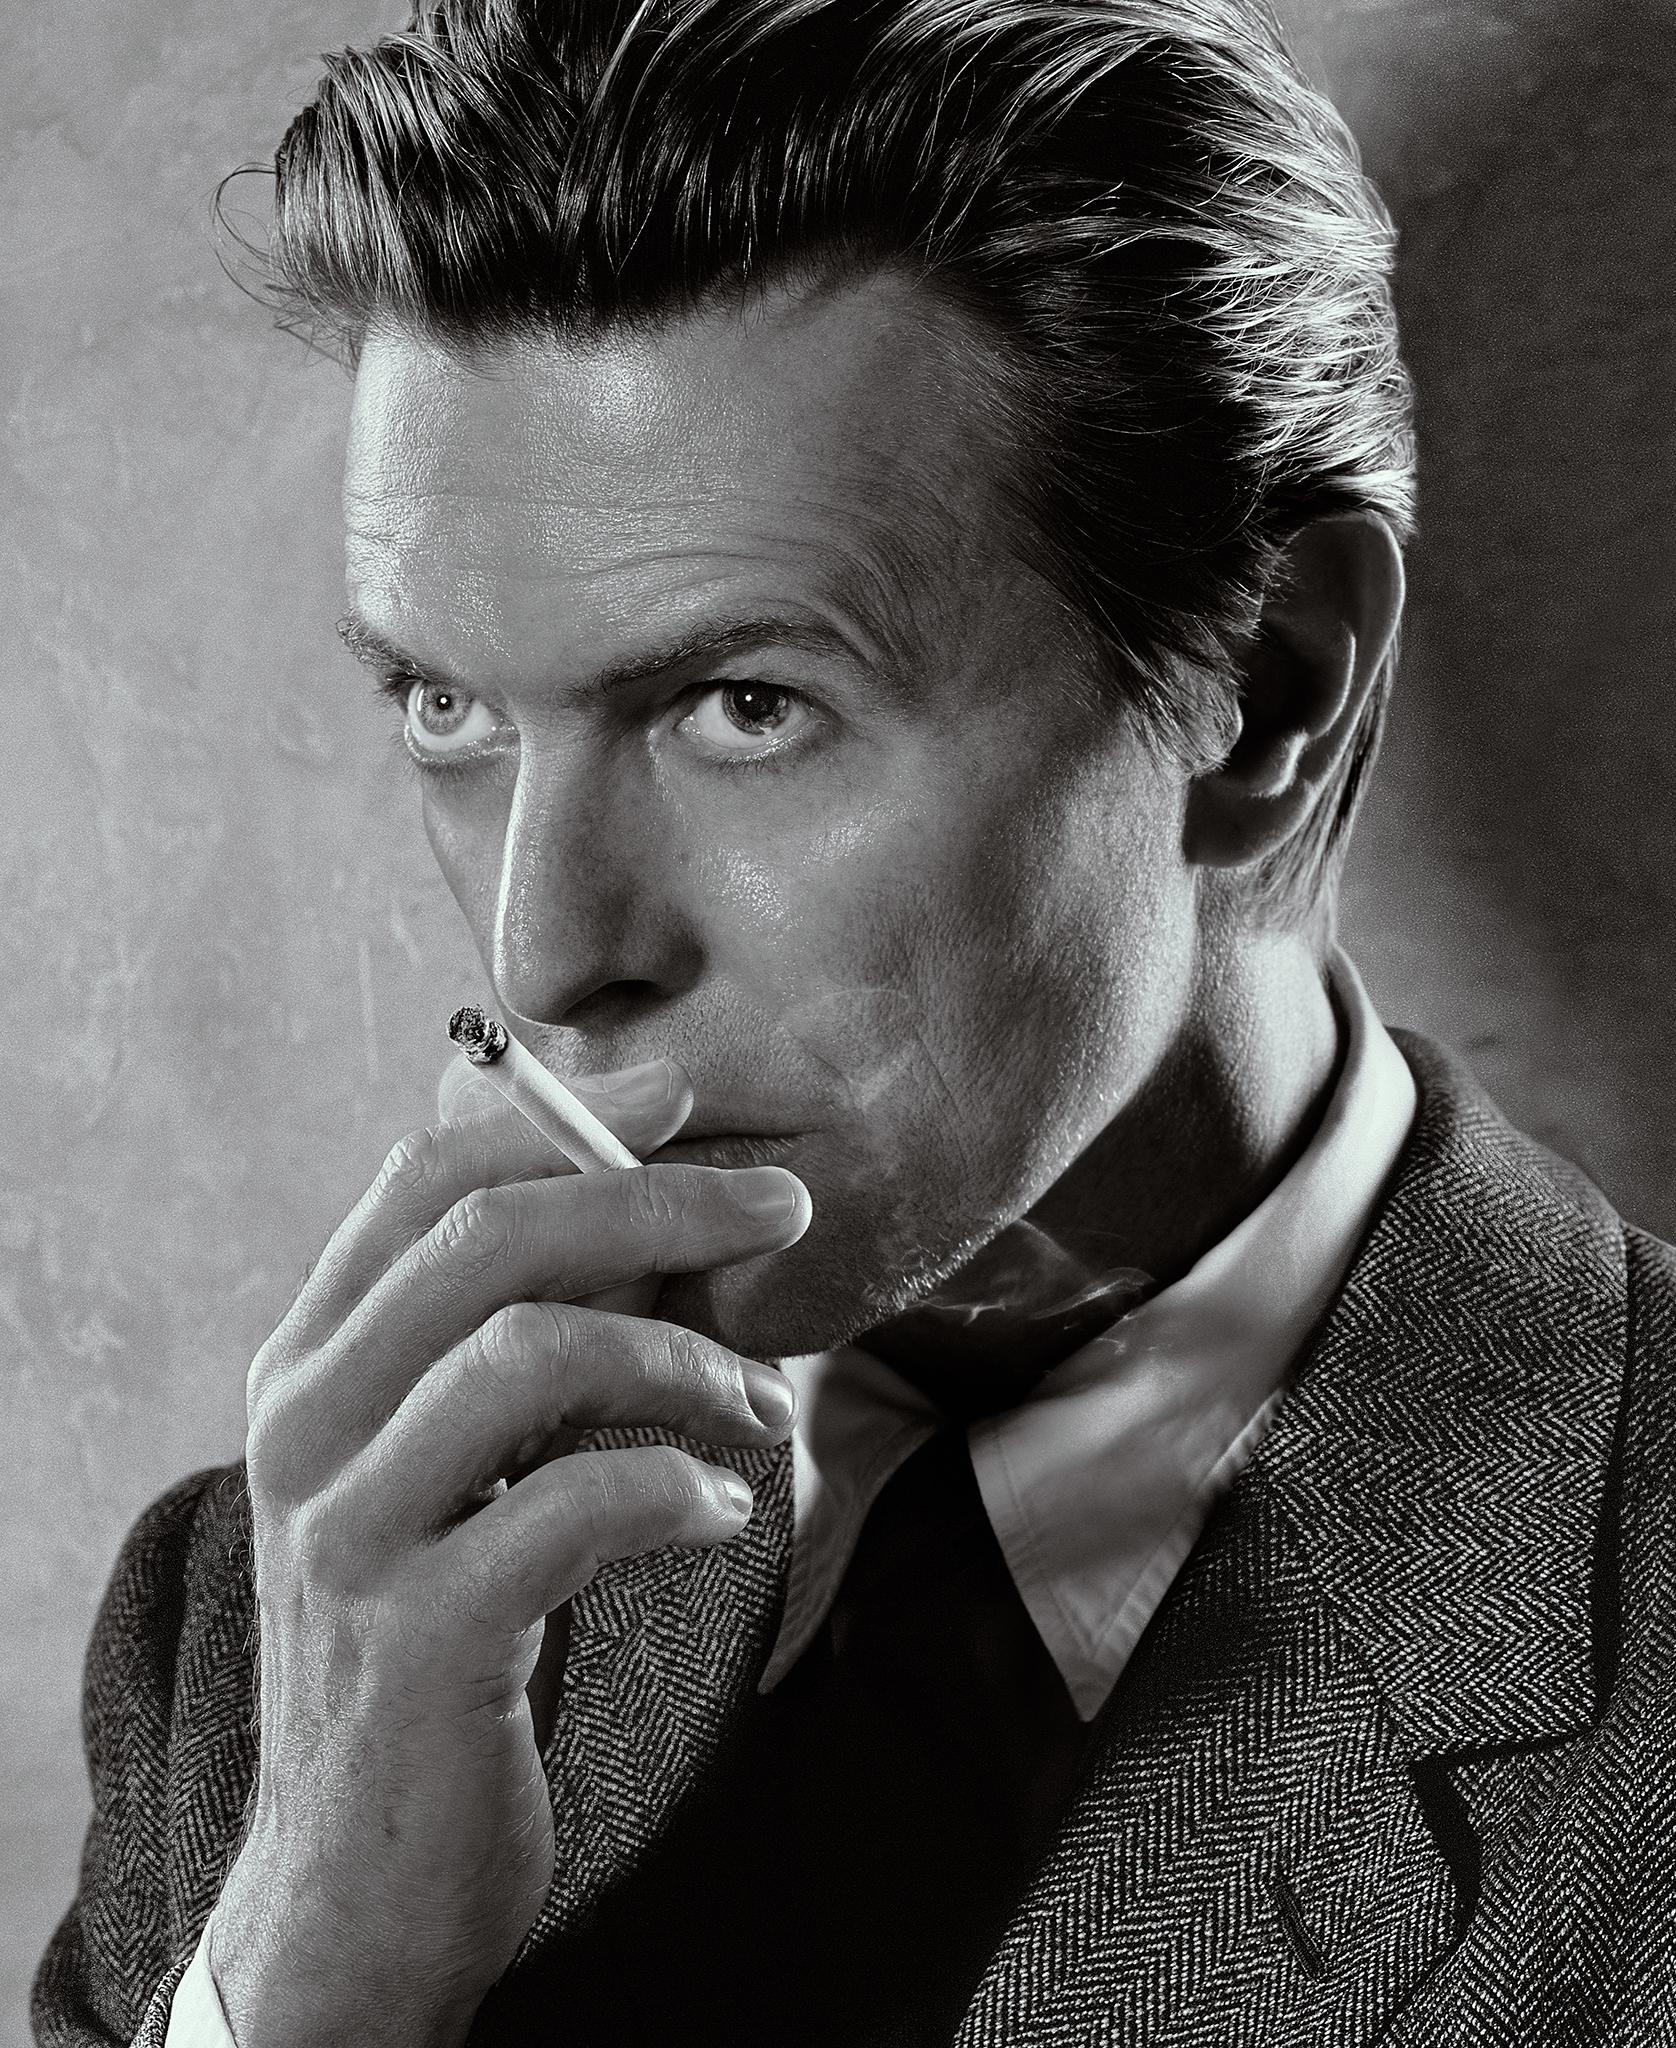 Ein atemberaubendes, signiertes Foto von David Bowie in limitierter Auflage, aufgenommen von dem internationalen Star-Fotografen Markus Klinko (Bio unten) im Jahr 2001. Wir bieten diesen signierten C-Print in streng limitierter Auflage in